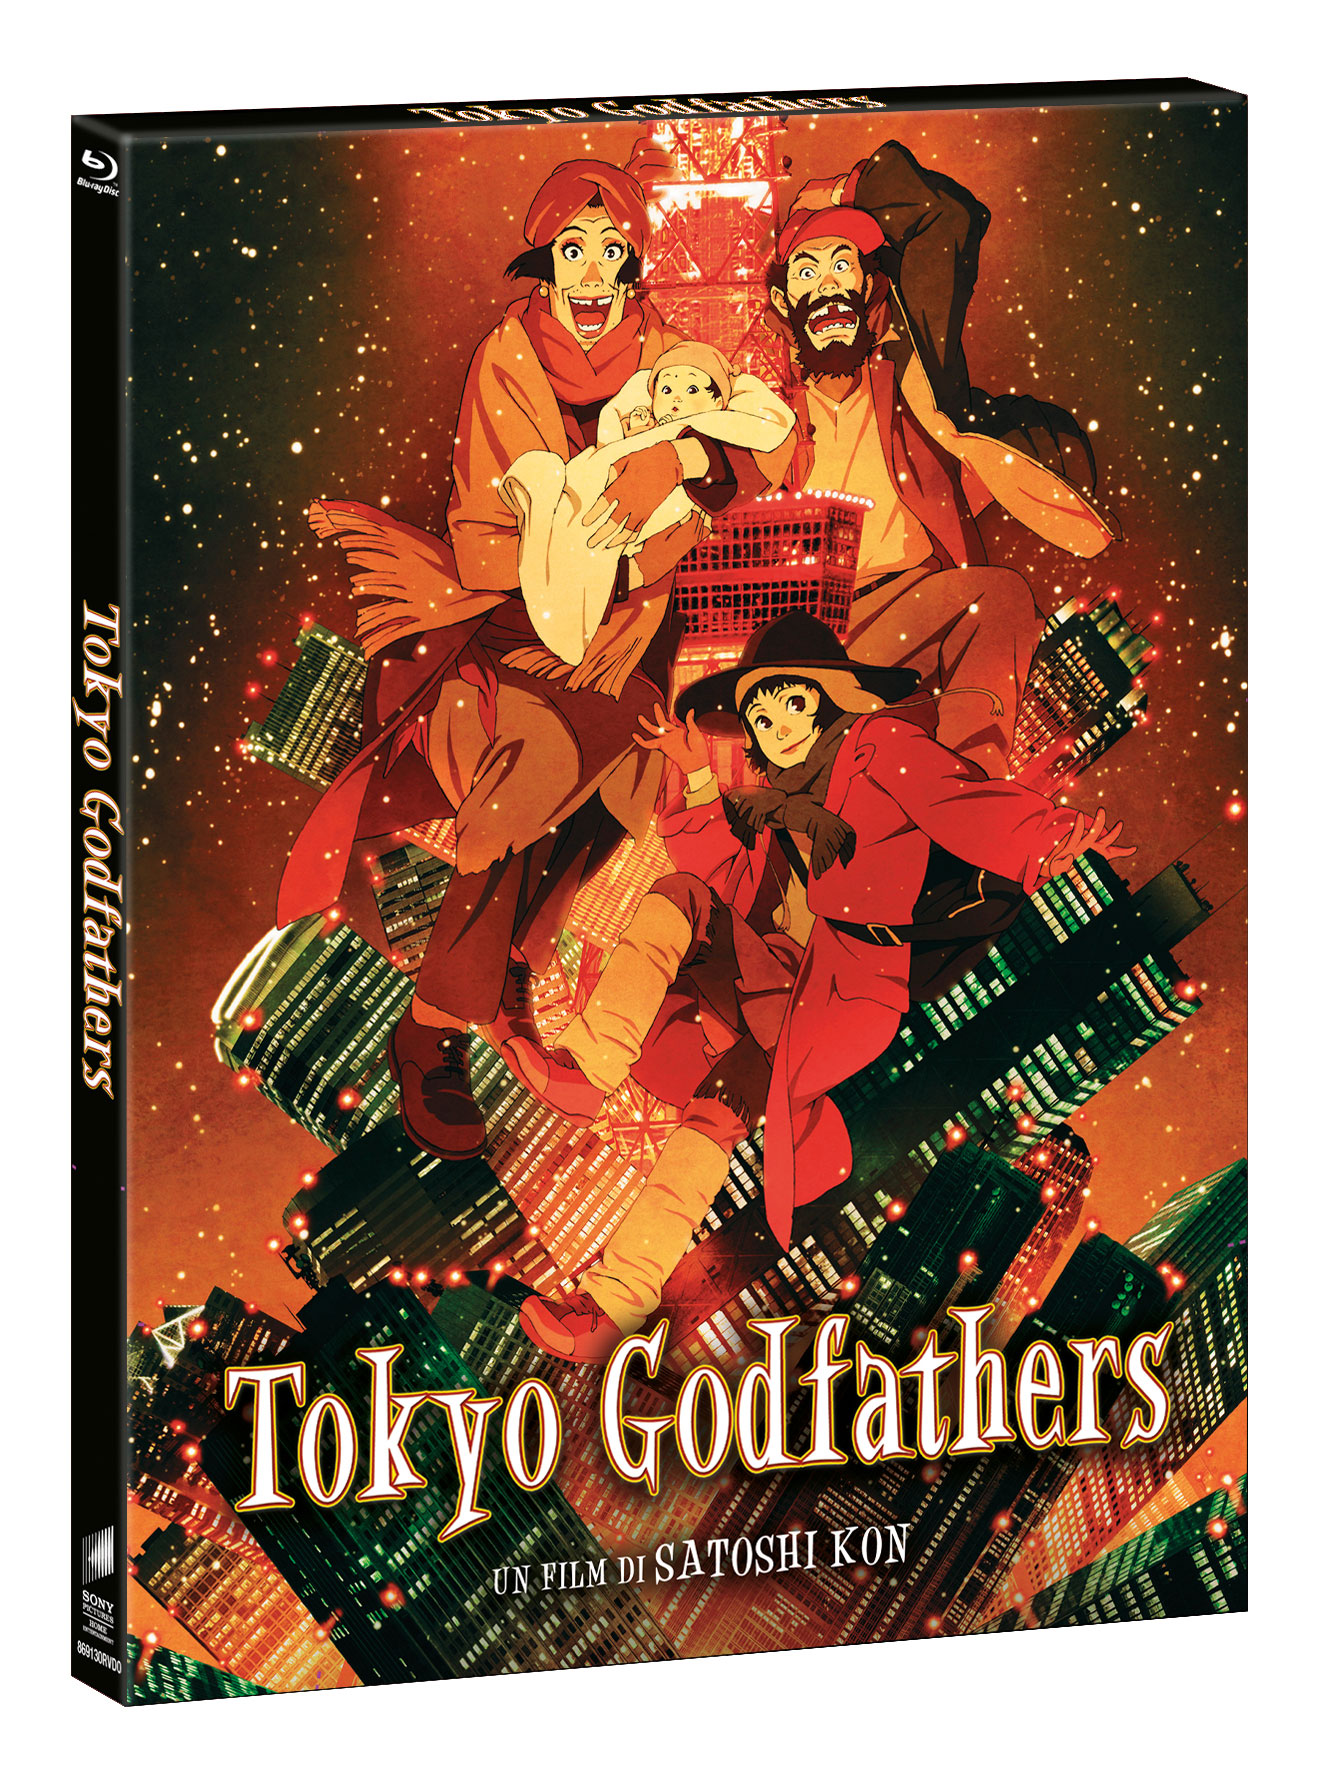 Tokyo Godfather